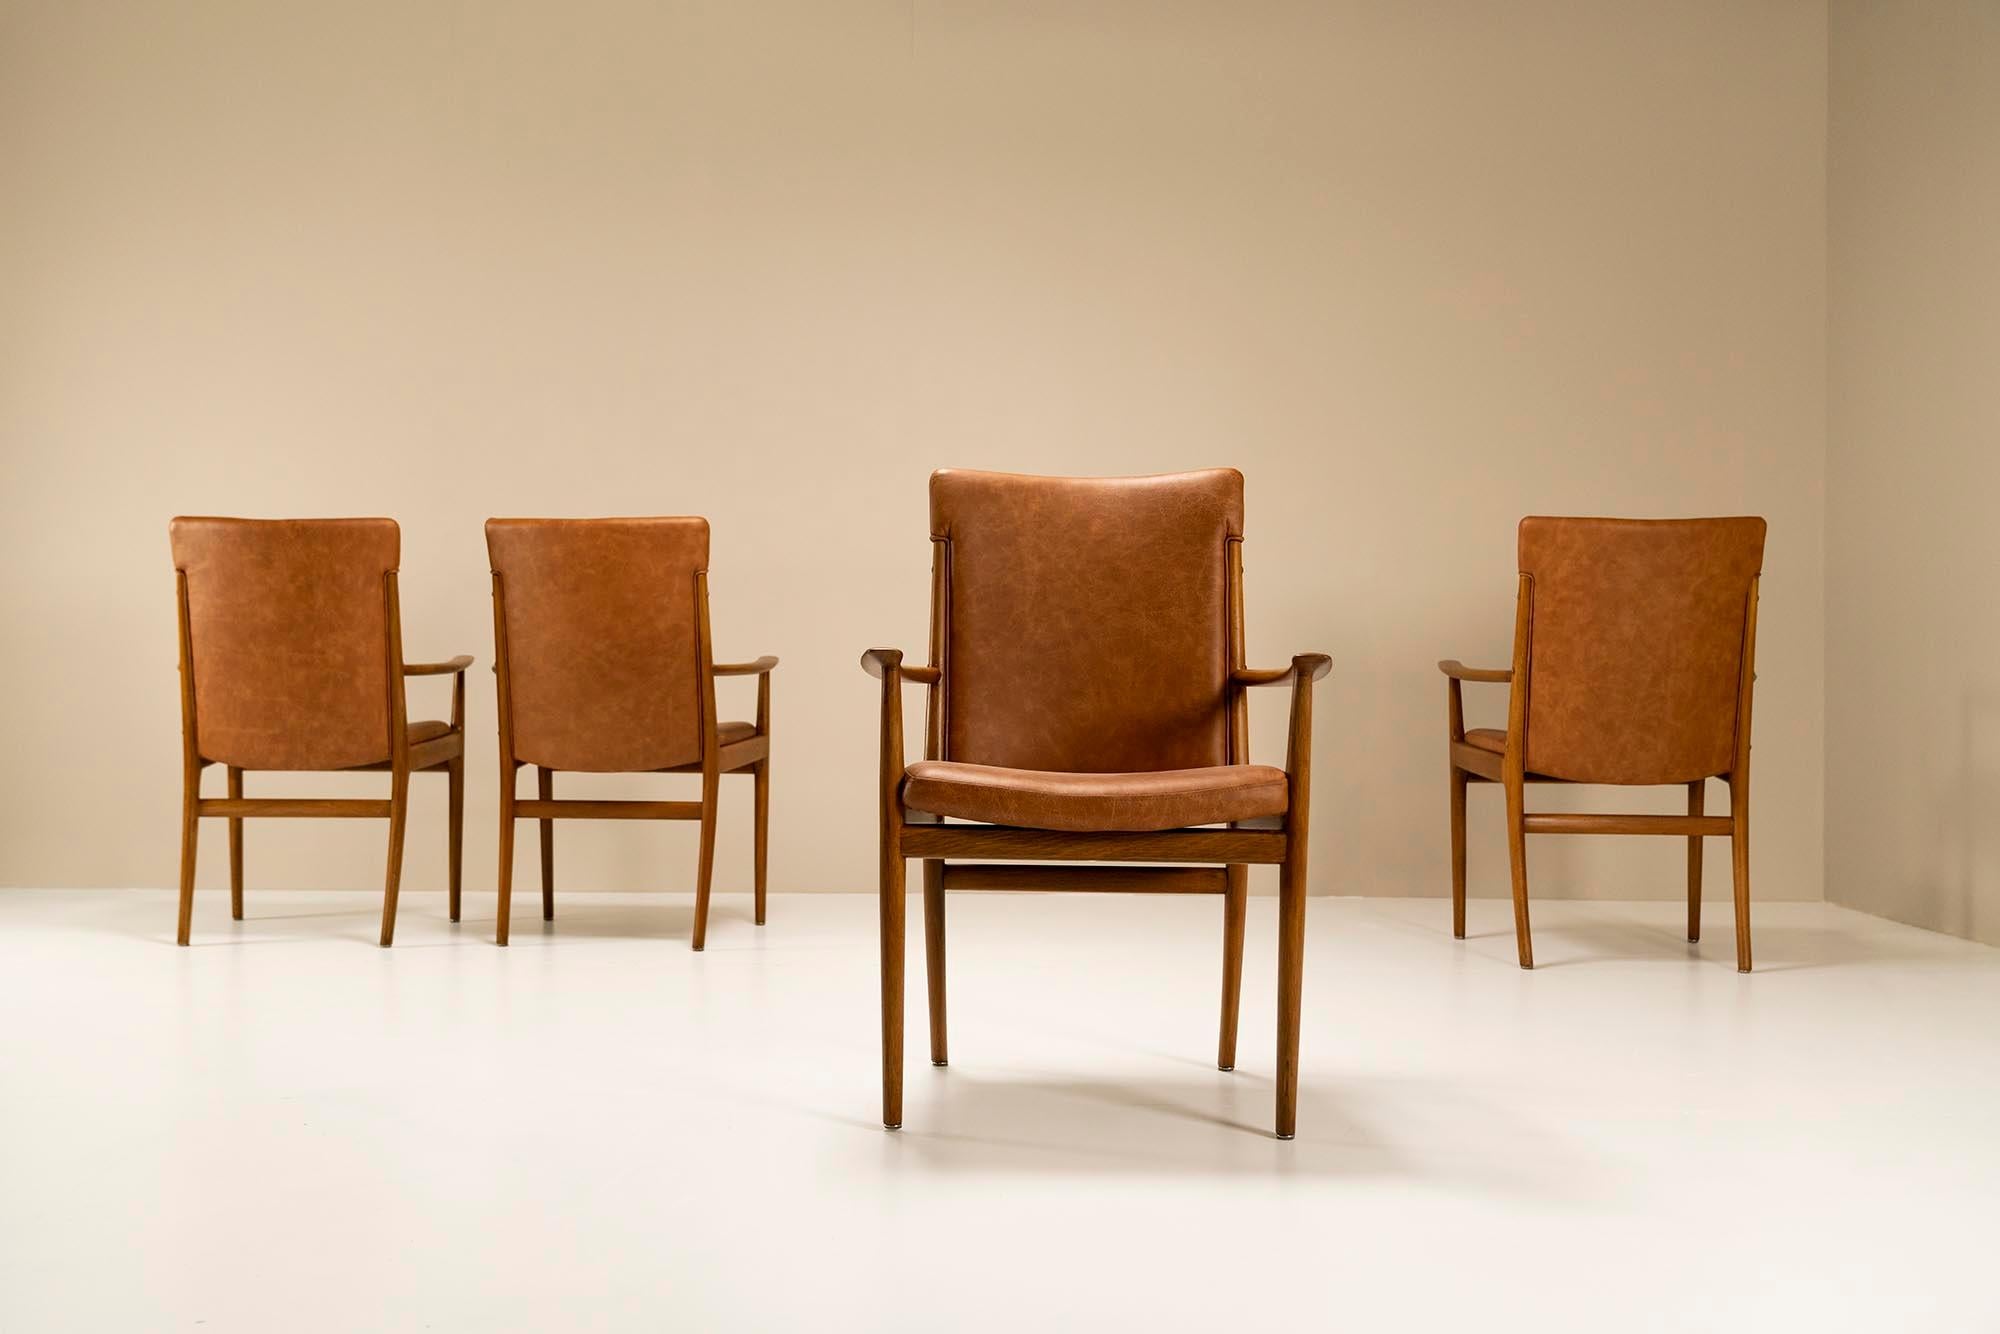 Quatre fauteuils magnifiquement conçus par le designer danois Kai Lyngfeldt Larsen et fabriqués par l'usine de Søren Willadsen dans les années 1960. Le frêne danois a été utilisé pour ce design, qui se manifeste de manière raffinée. Les dessins ou